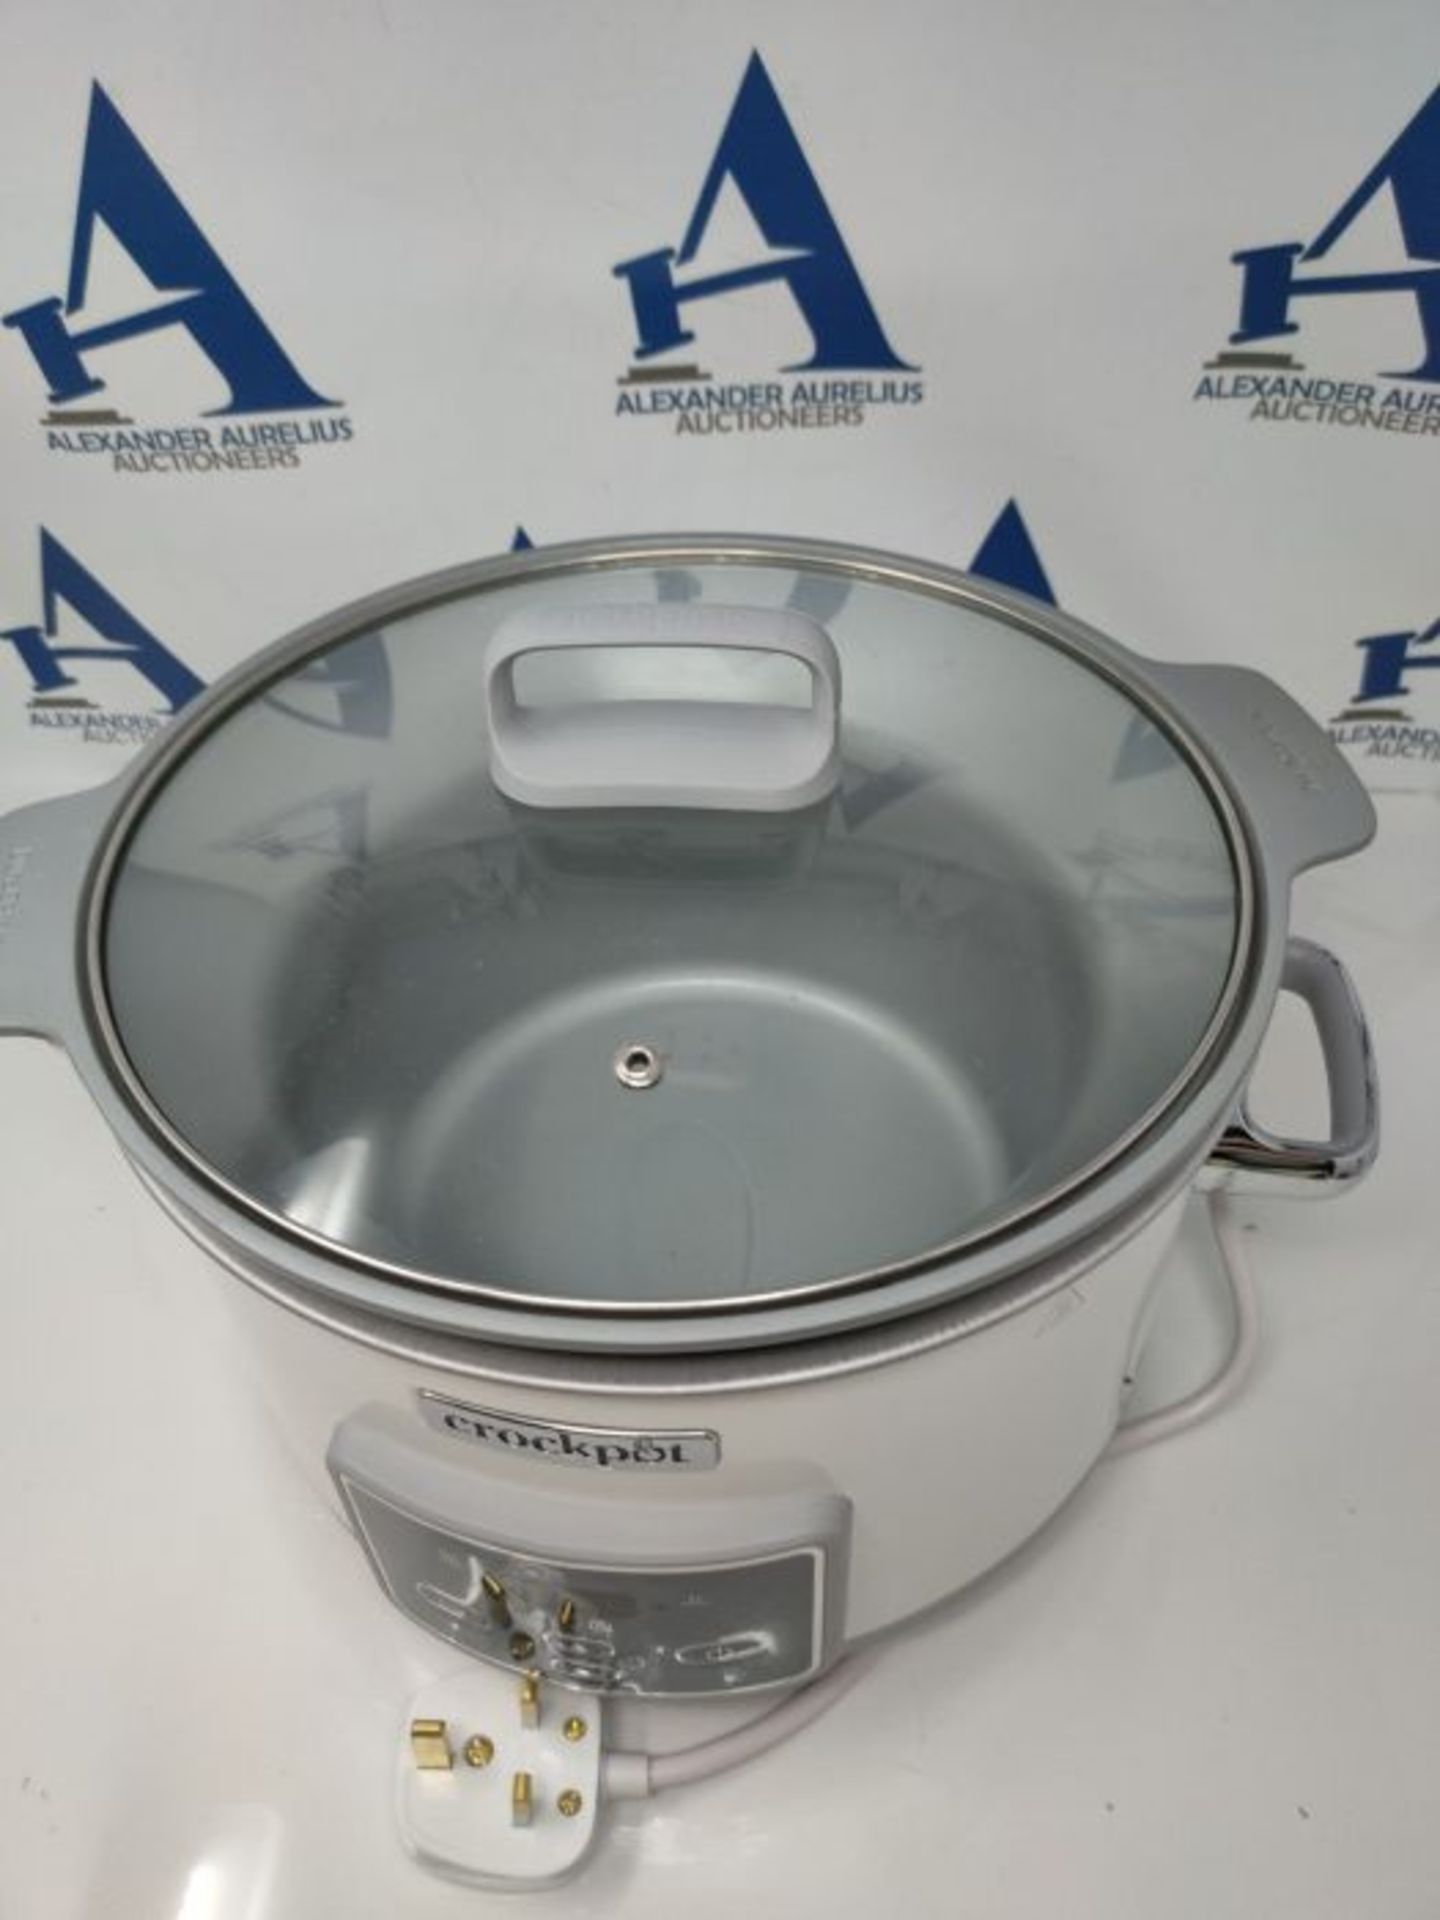 RRP £119.00 Crockpot DuraCeramic Digital Saute Slow Cooker with Hob-Safe Pot | Digital Timer | Ant - Image 2 of 3